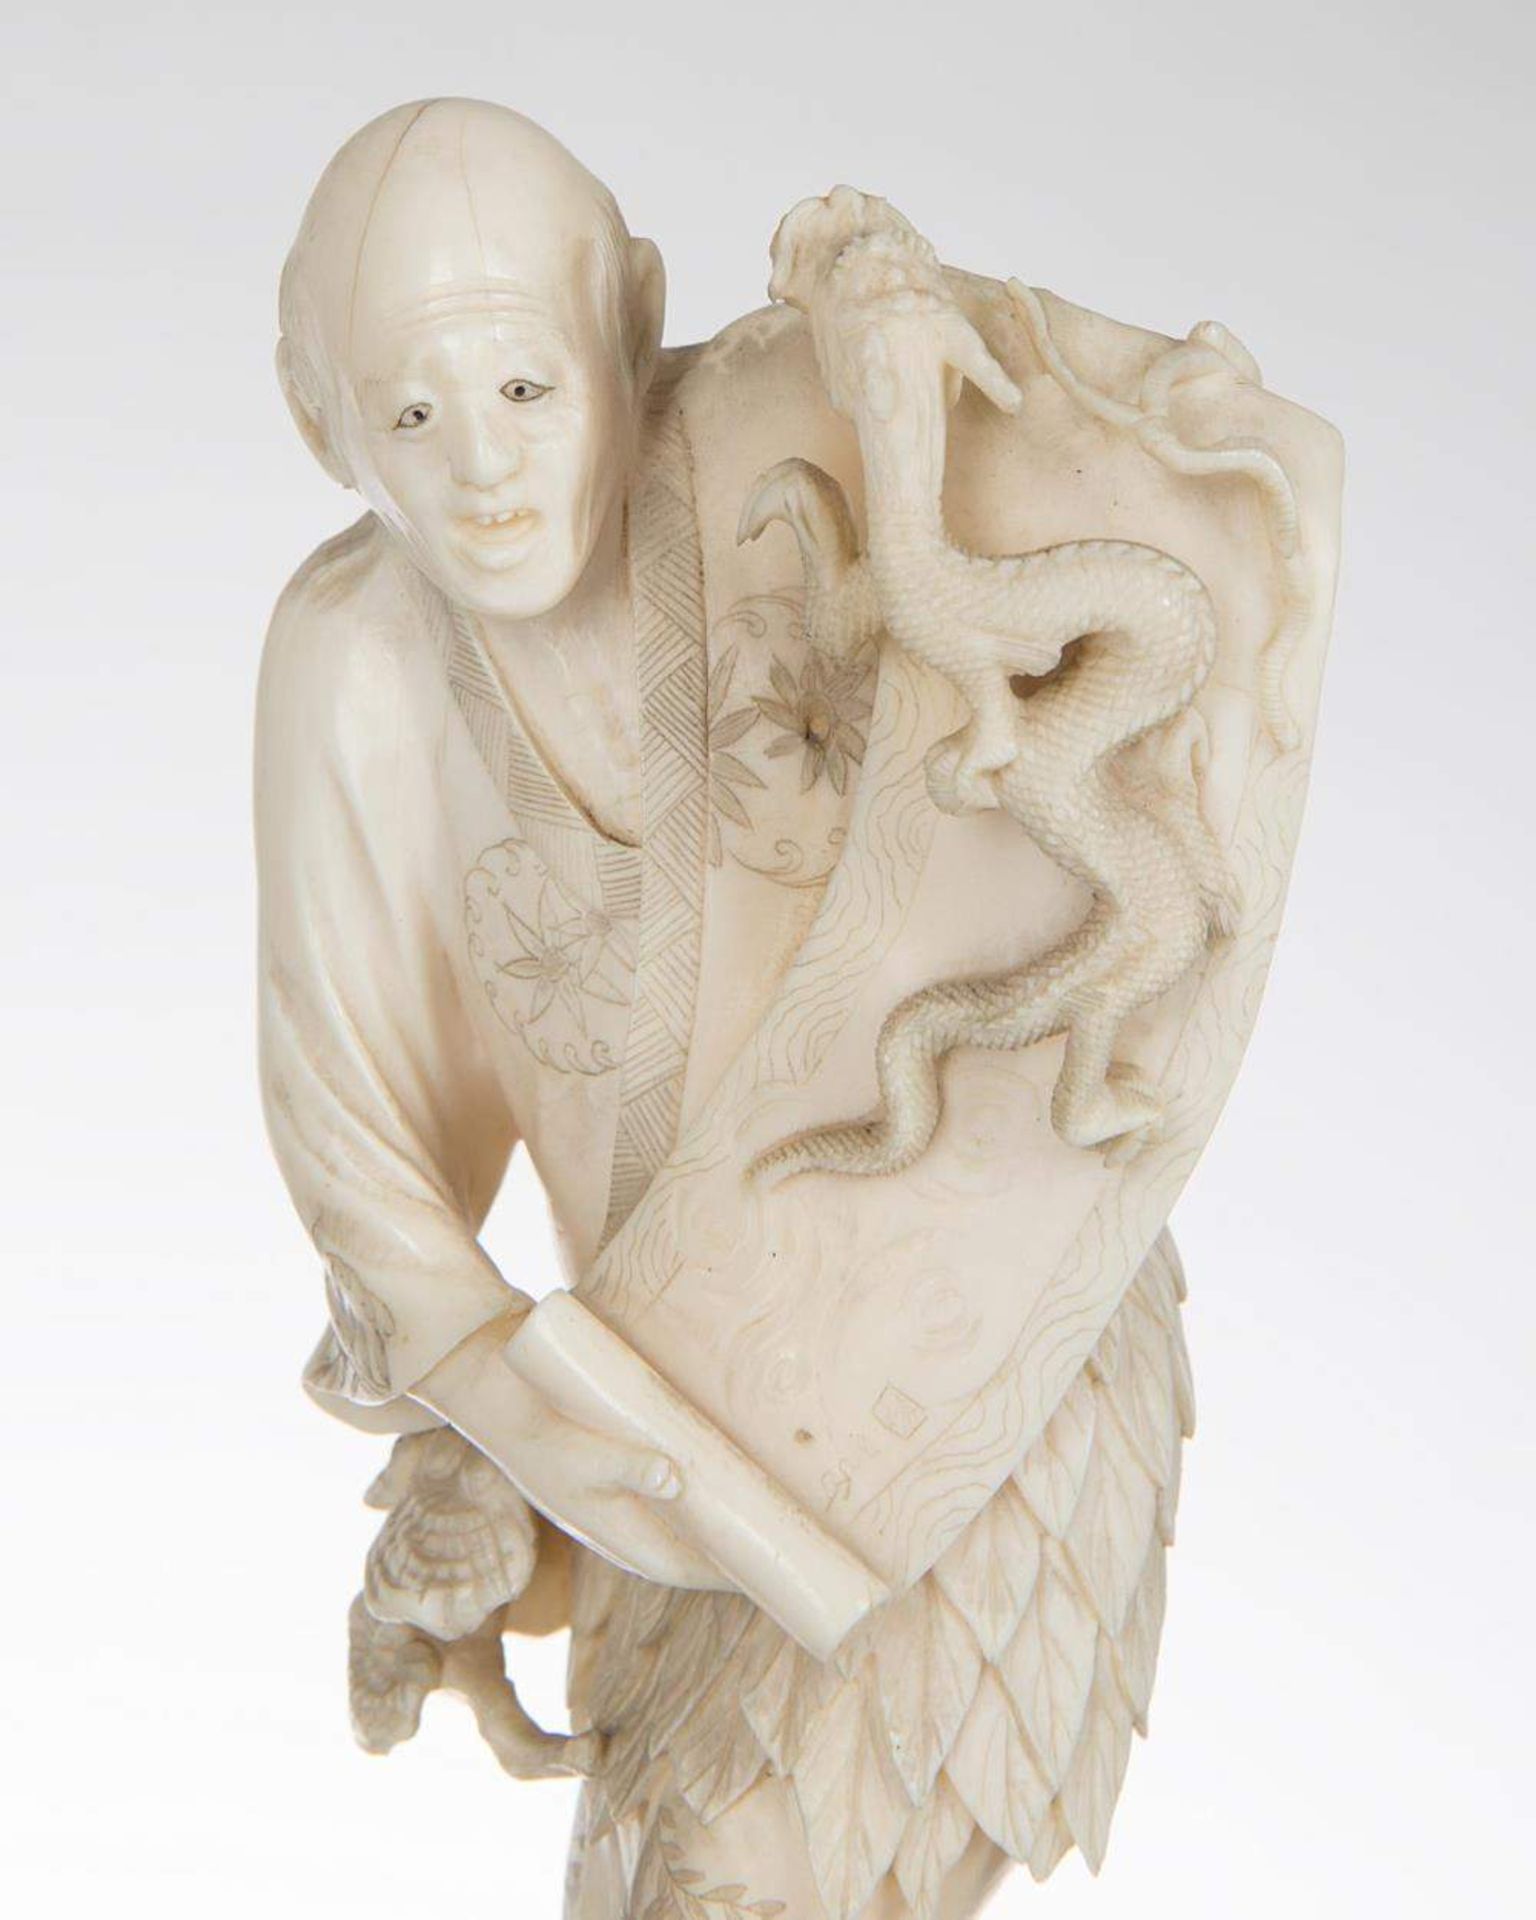 okimono en ivoire représentant un vieil homme déroulant un rouleau duquel sort un dragon des flots - Image 3 of 4